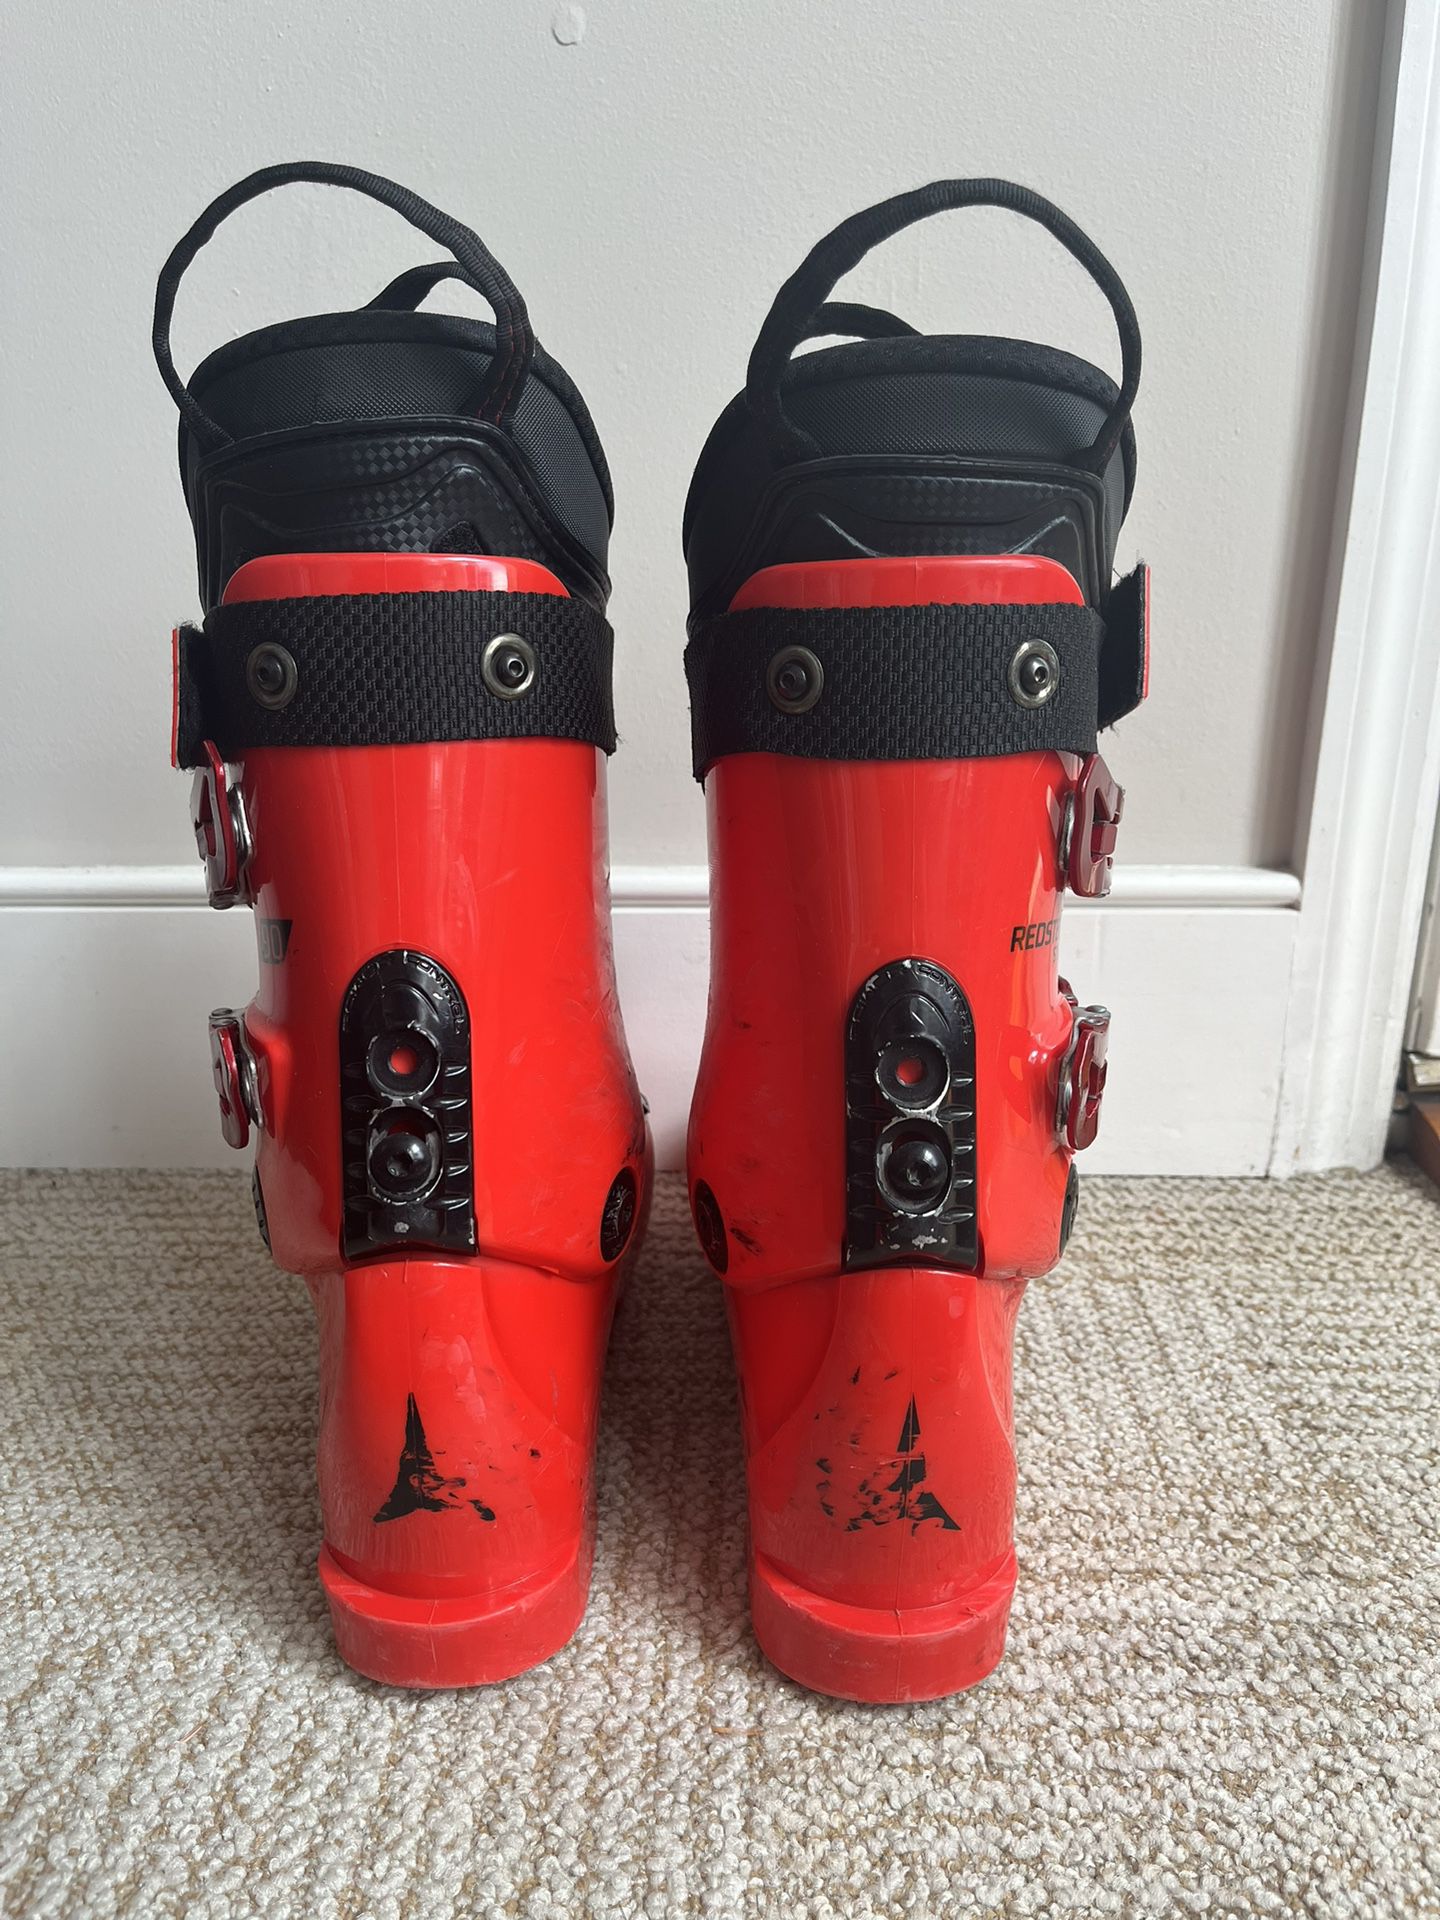 2022 Atomic Redster STI 90 LC 27/27.5 Ski Boot for Sale in